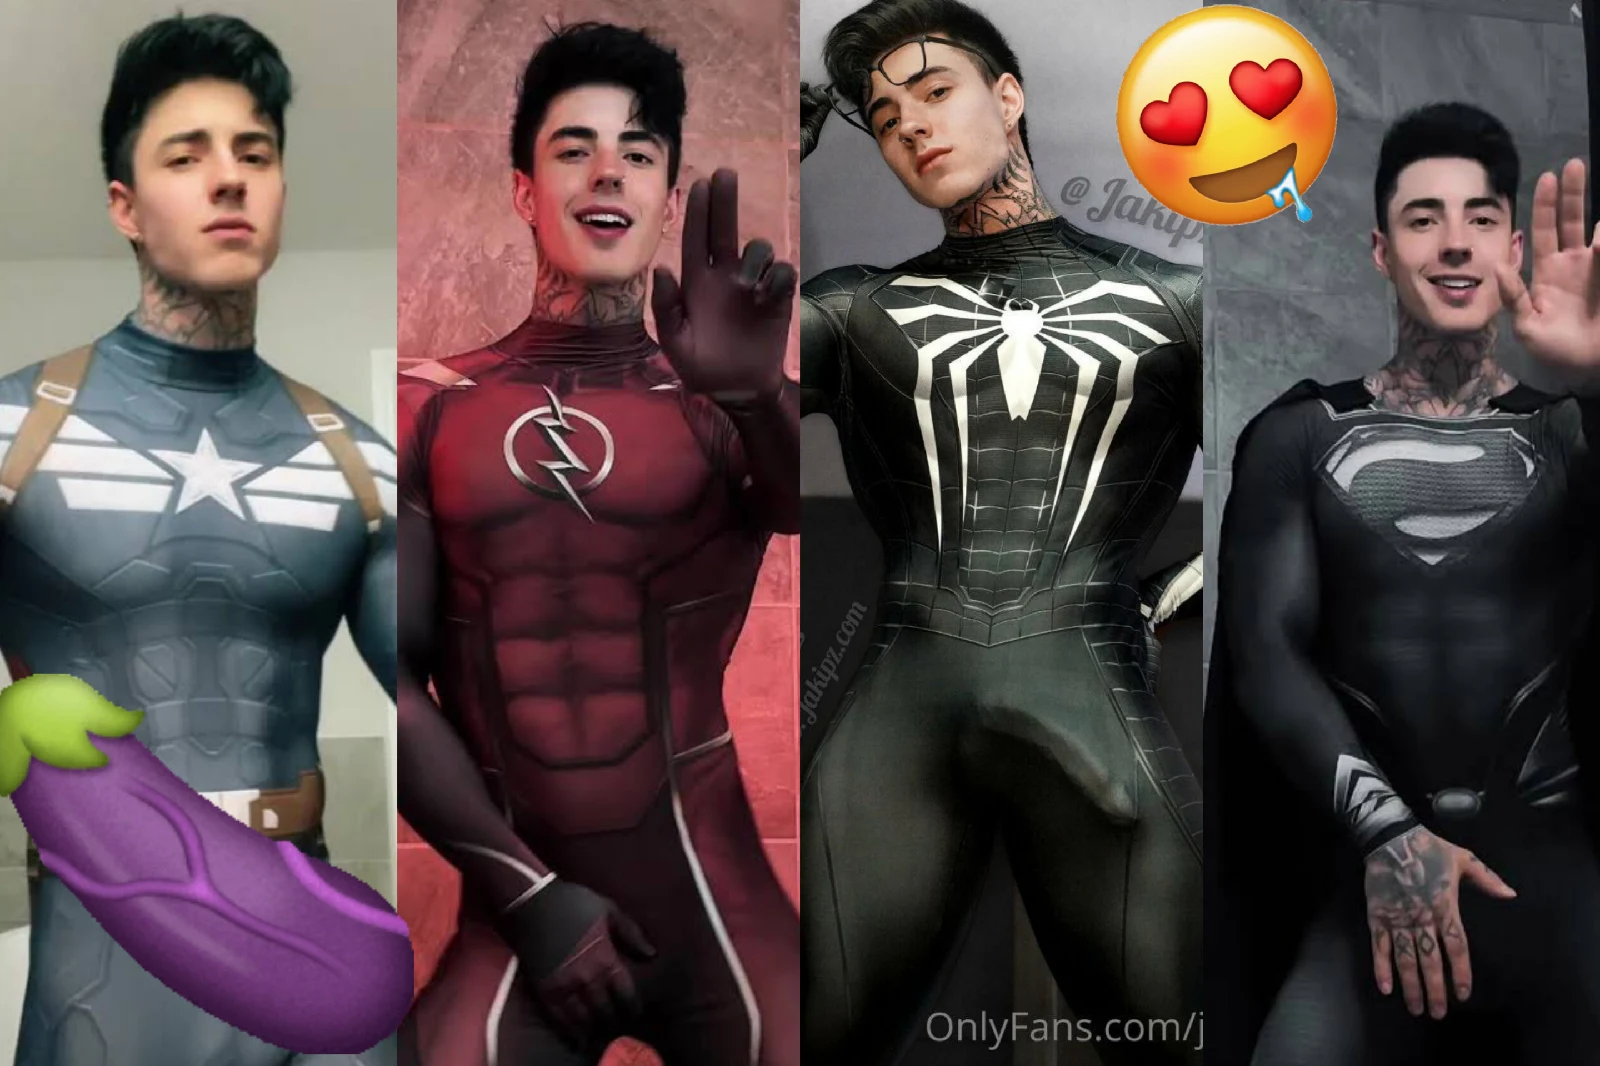 Jakipz todo safadinho nós trajes do Capitão América,The flash, Spiderman e Superman Quais desses super-heróis e o seu preferido!?